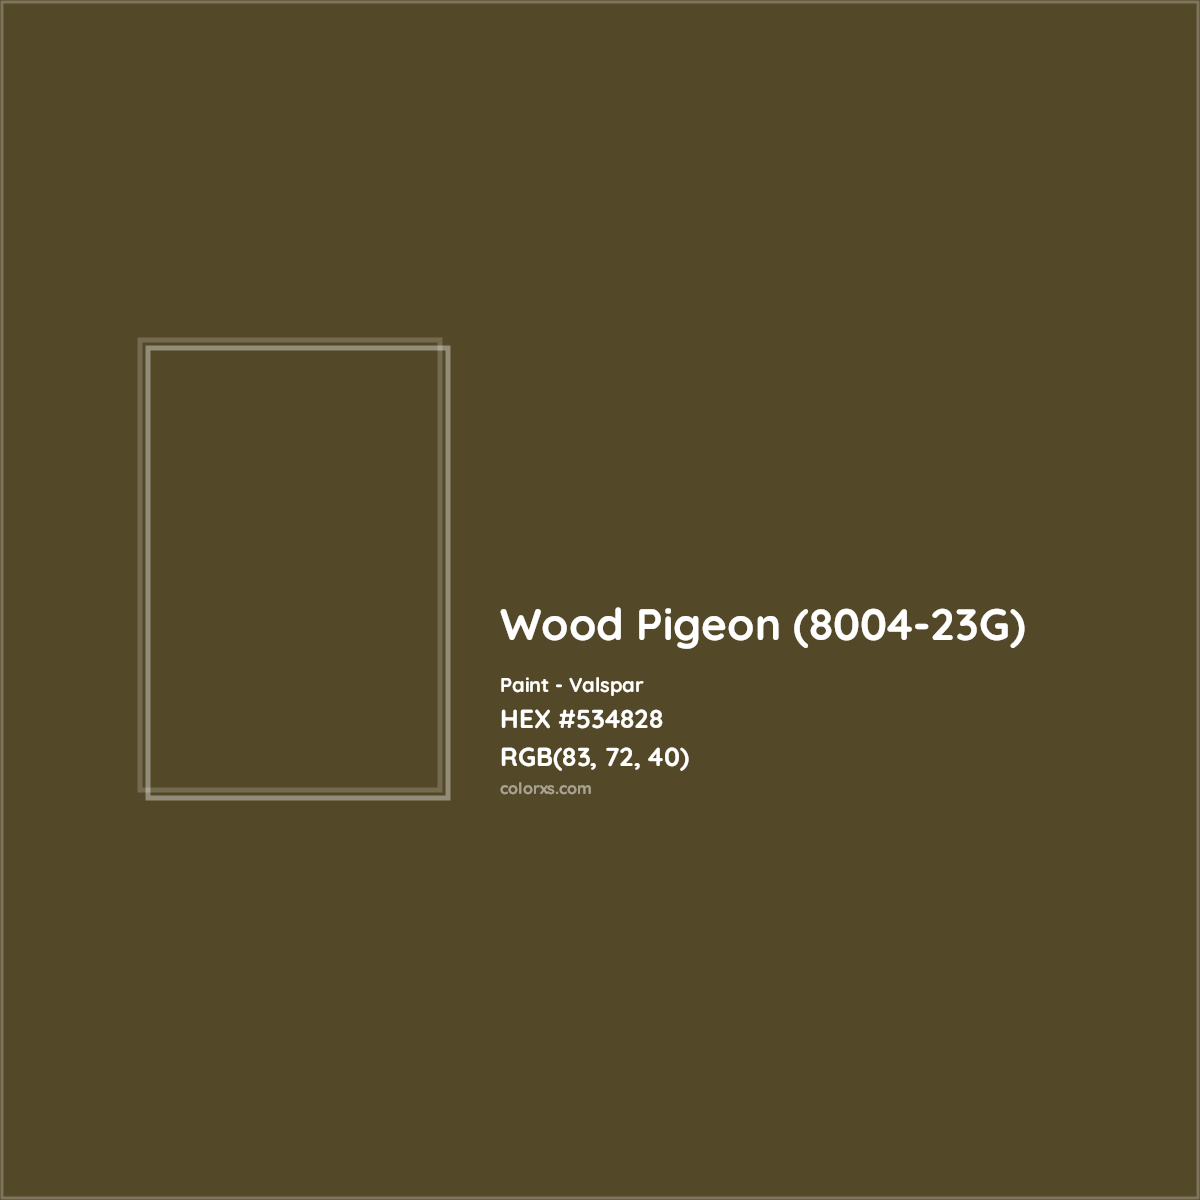 HEX #534828 Wood Pigeon (8004-23G) Paint Valspar - Color Code